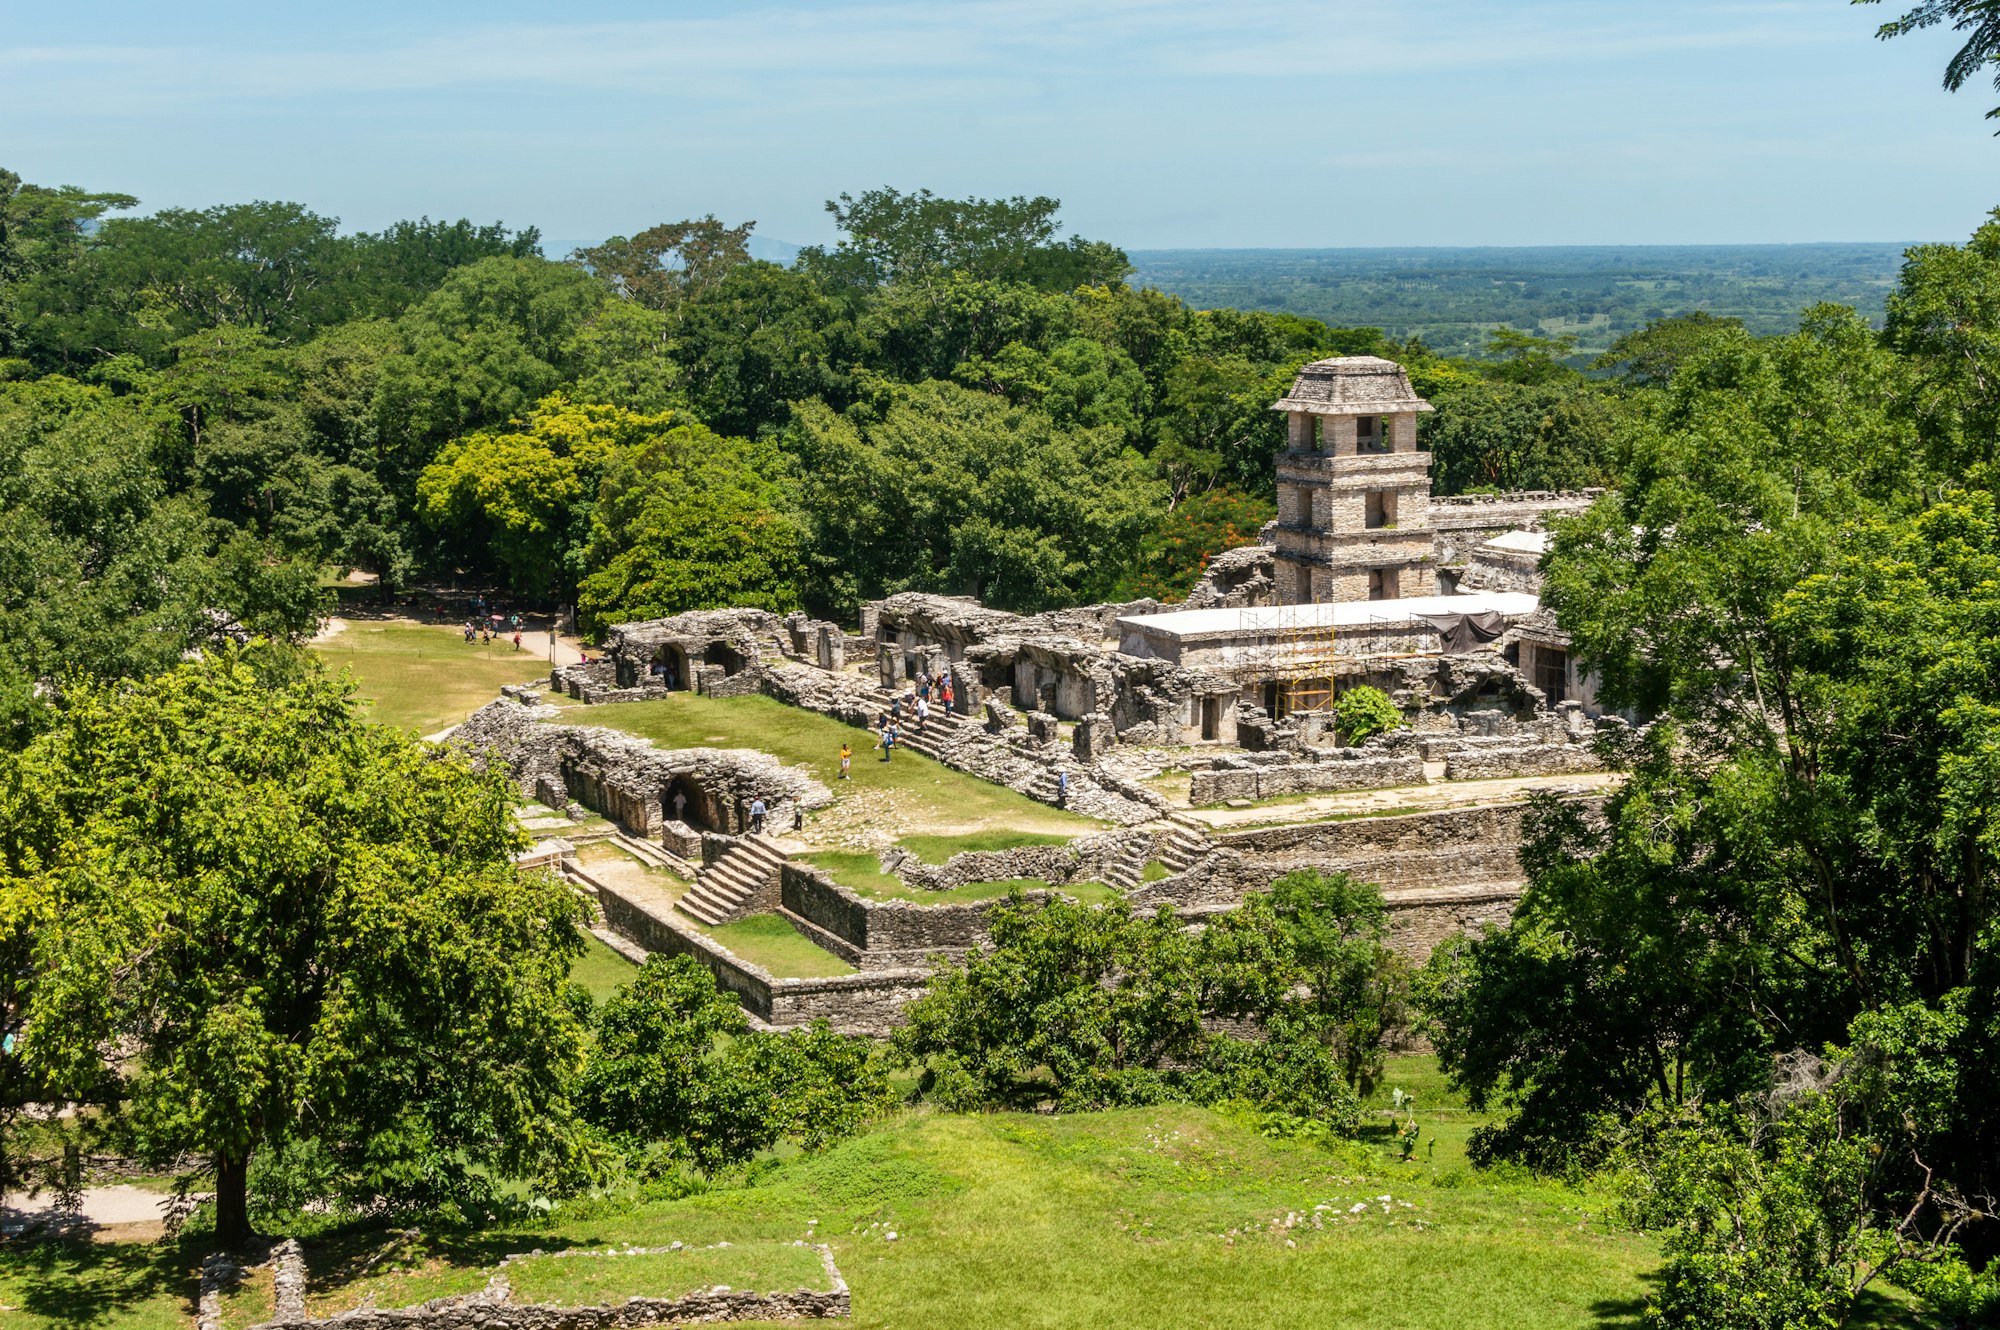 History of Chiapas